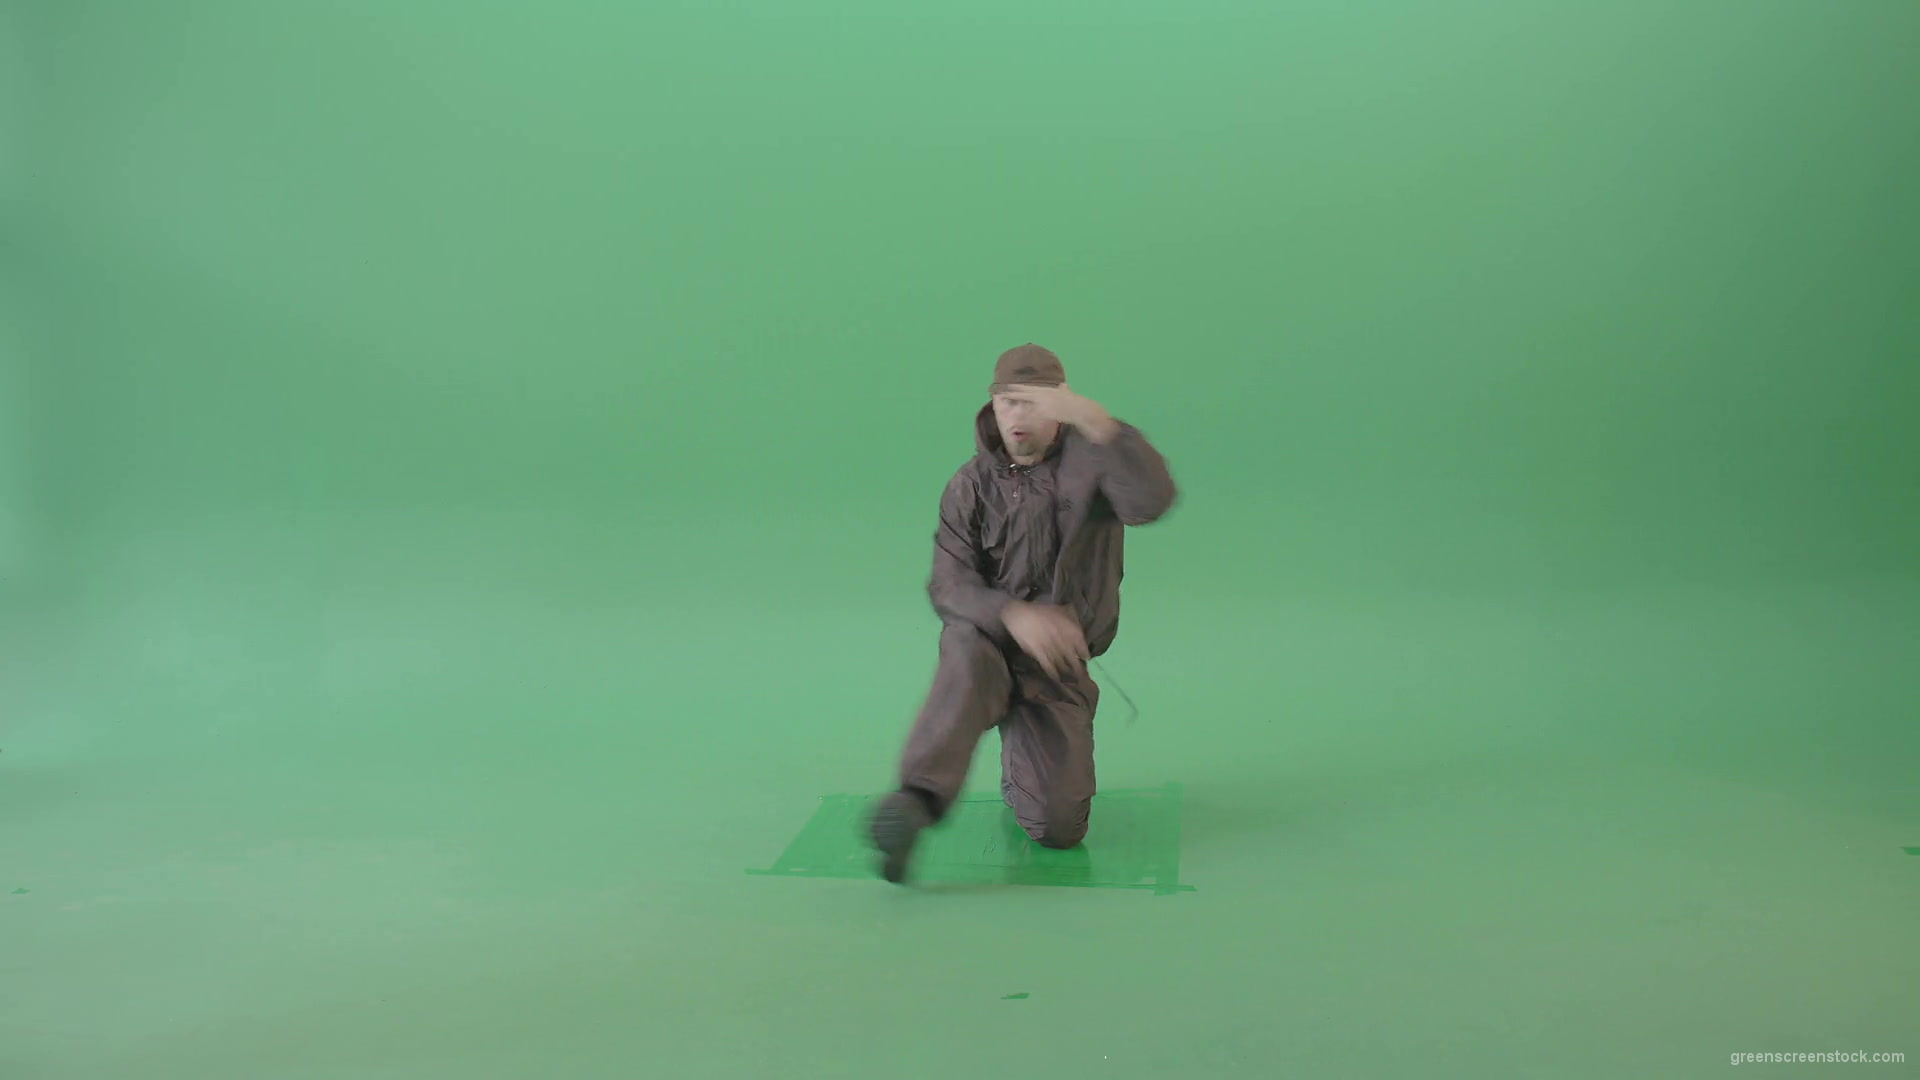 Man-dancing-breakdance-on-green-screen-4K-Video-Footage-1920_009 Green Screen Stock